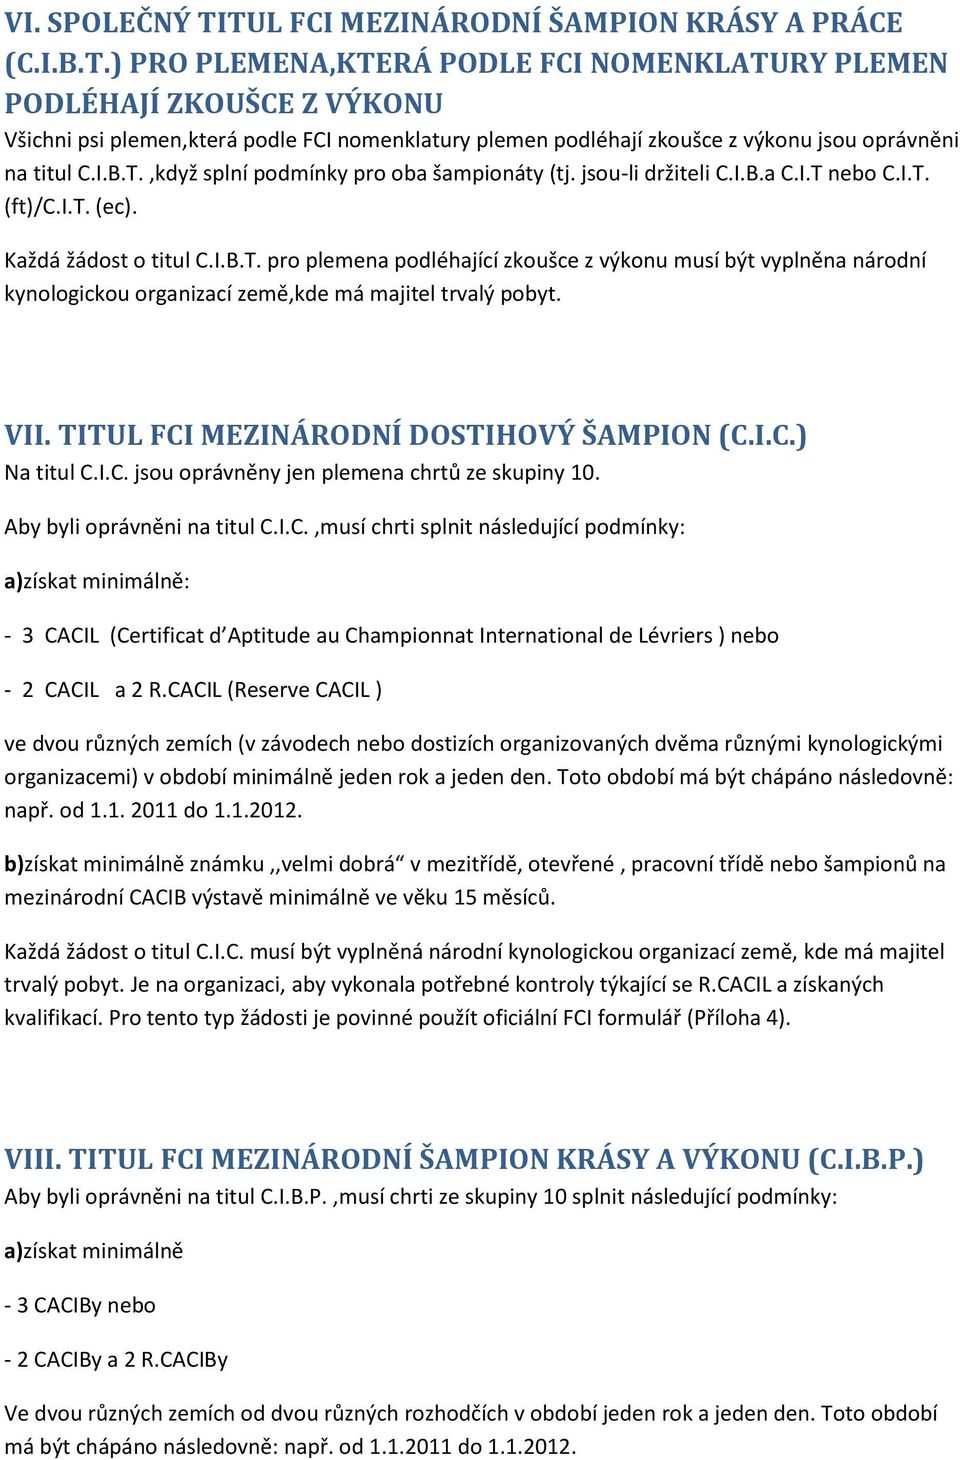 VII. TITUL FCI MEZINÁRODNÍ DOSTIHOVÝ ŠAMPION (C.I.C.) Na titul C.I.C. jsou oprávněny jen plemena chrtů ze skupiny 10. Aby byli oprávněni na titul C.I.C.,musí chrti splnit následující podmínky: a)získat minimálně: - 3 CACIL (Certificat d Aptitude au Championnat International de Lévriers ) nebo - 2 CACIL a 2 R.